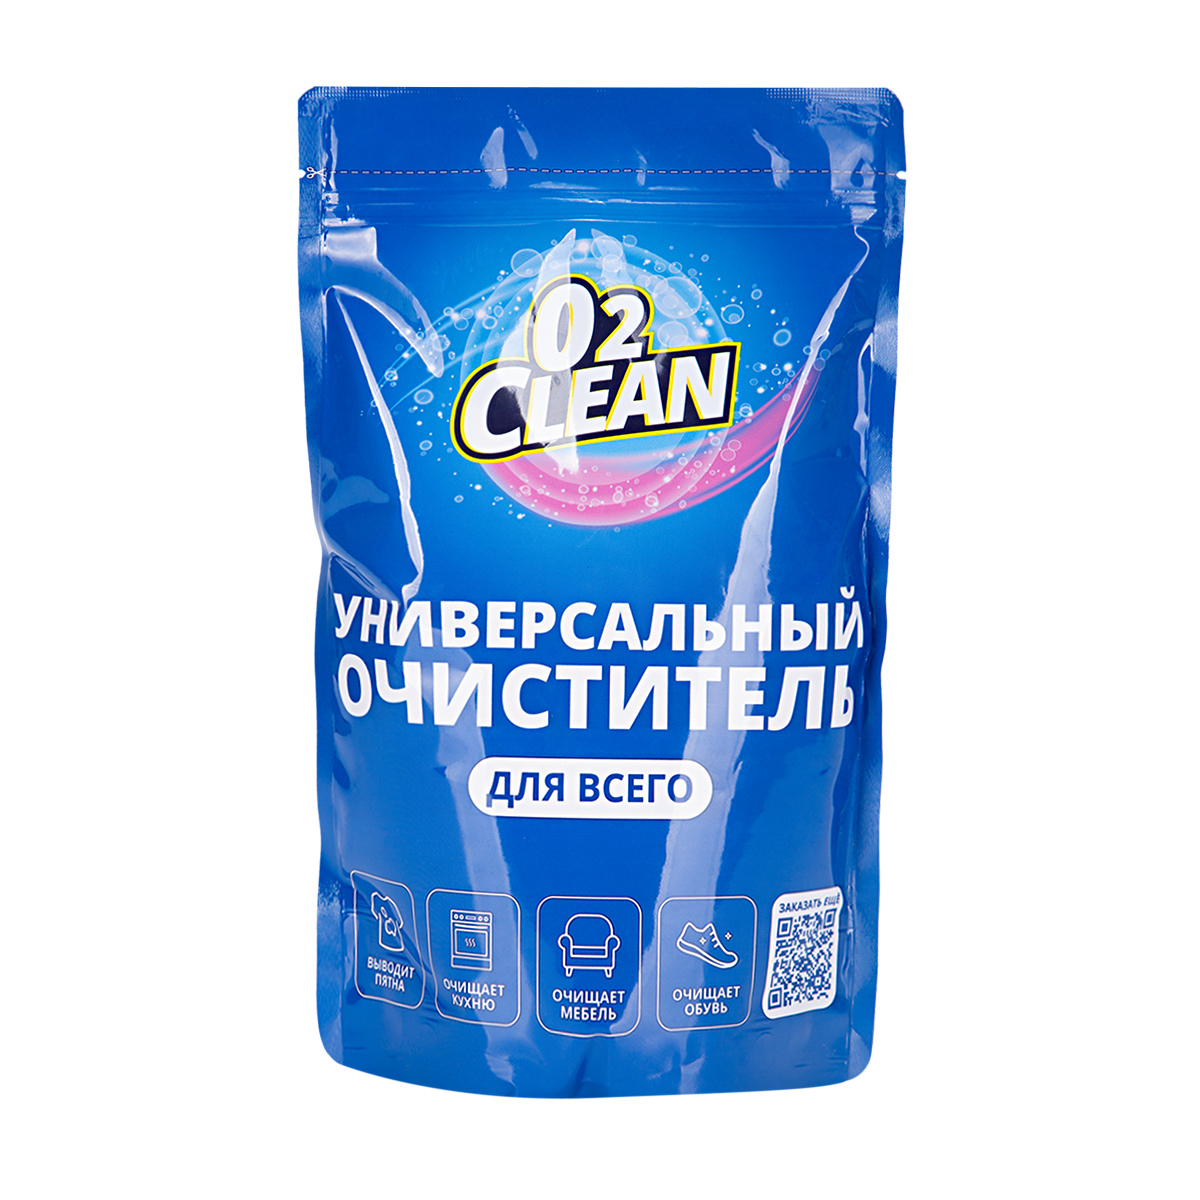 Многофункциональный пятновыводитель О2Clean (1 шт, 1 кг), Бытовая химия, Чистящие и моющие средства